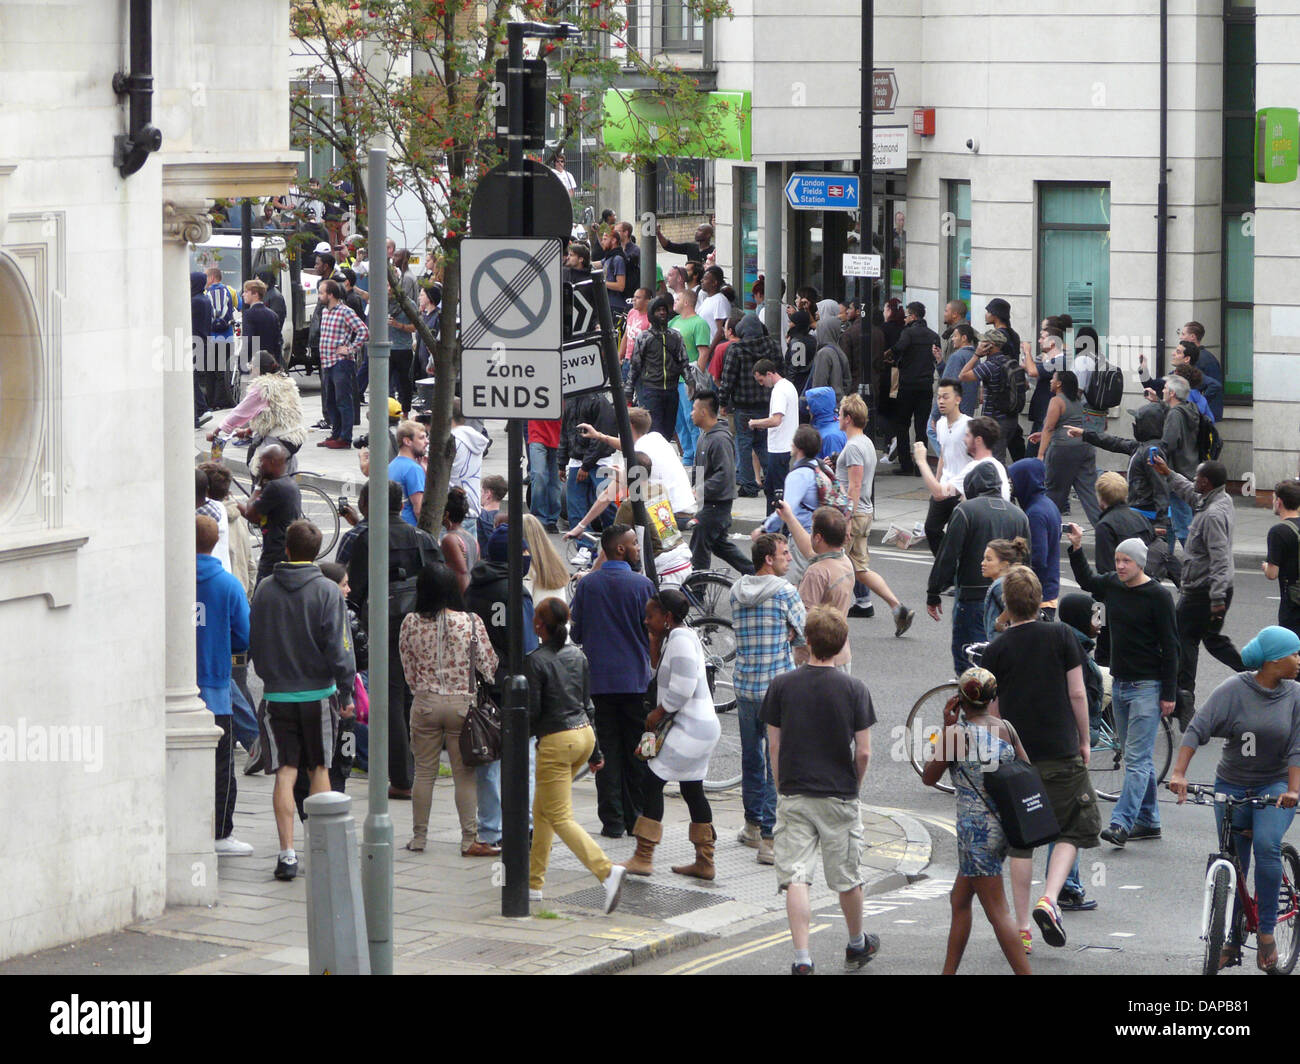 Gewaltbereite Demonstranten sammeln sich am Montag (08.08.11) auf der Mare Street in London. Seit dem Wochenende gibt es in mehreren Stadteilen in London Krawalle und Übergriffe auf Polizisten. Foto: Cordula Donhauser Stock Photo